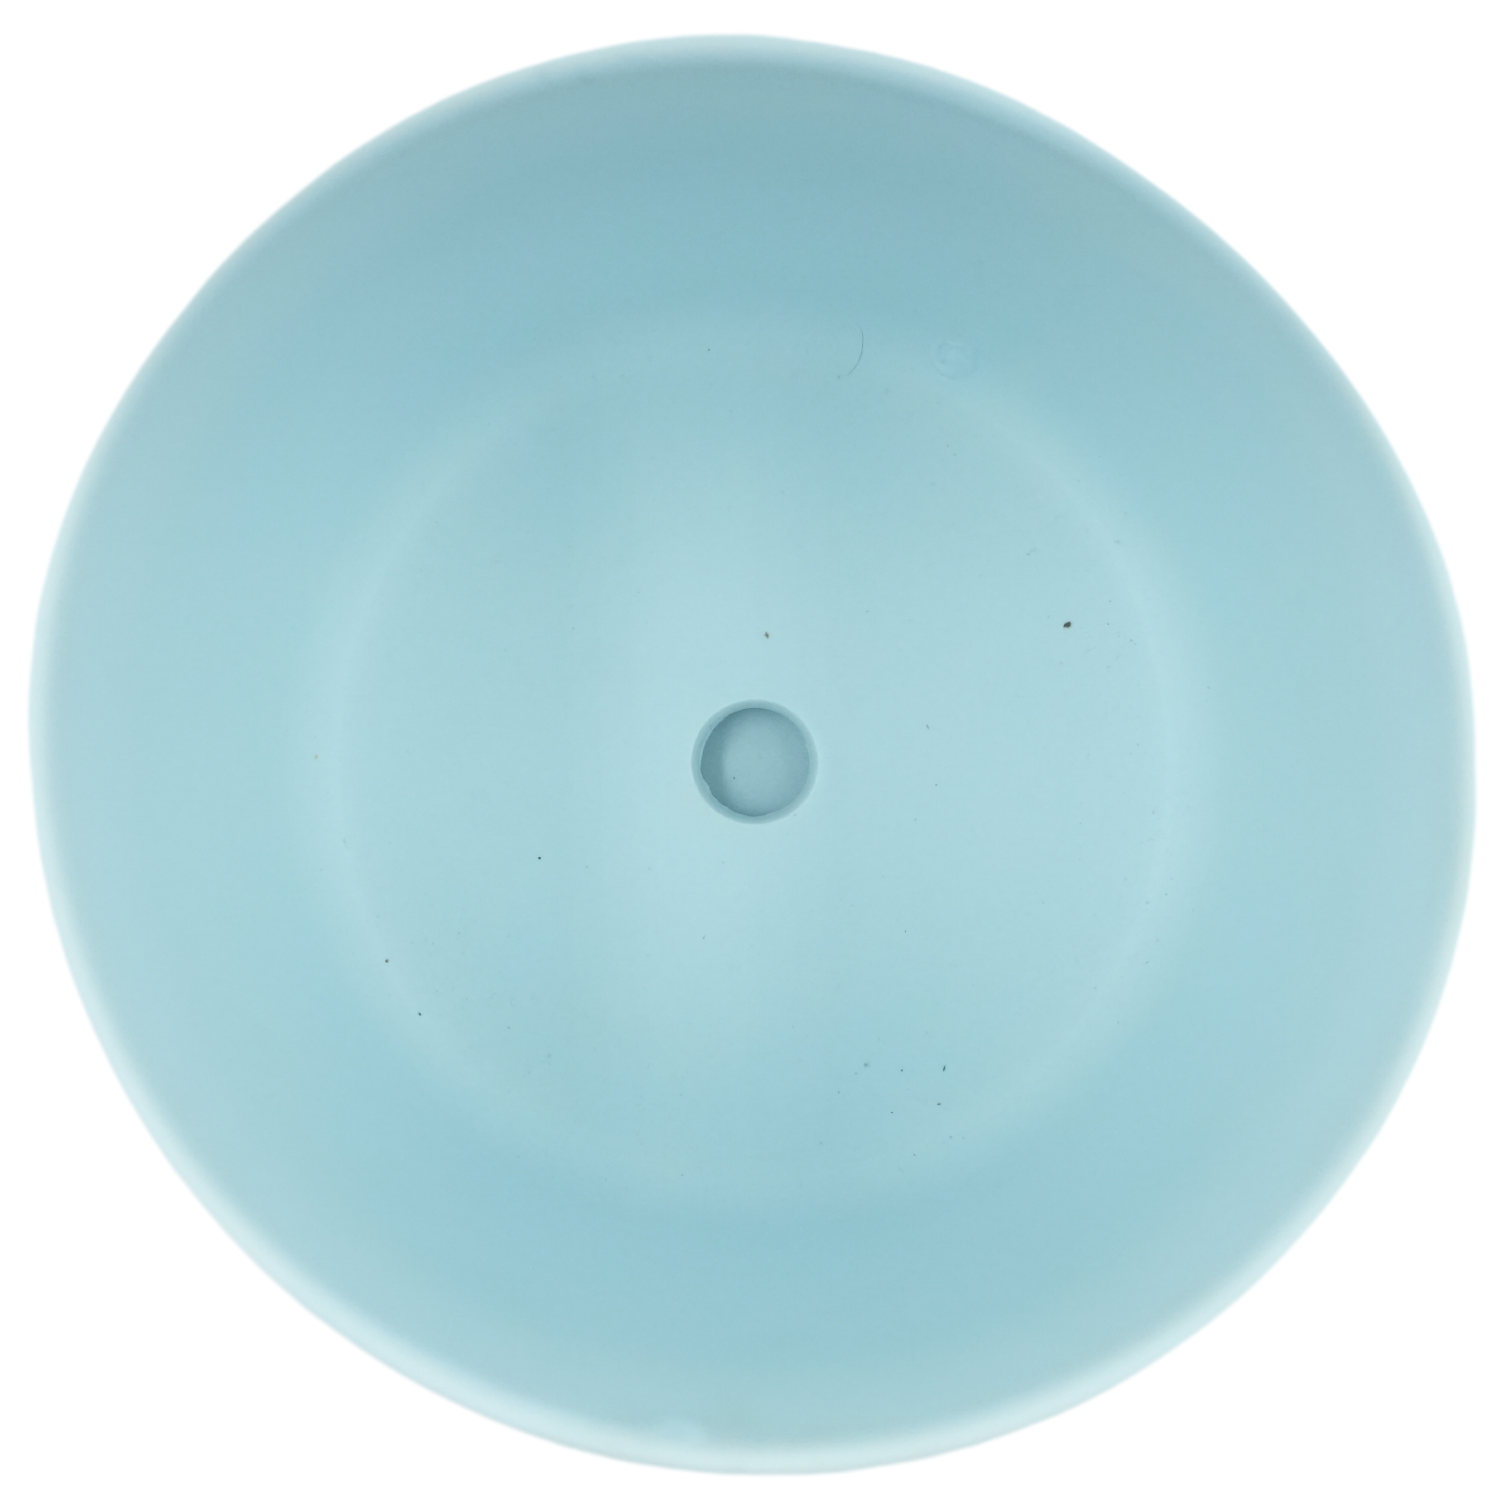 Designer Ceramic Pot (Blue, Matt Finish,Large) for Home & Indoor Plant Decor